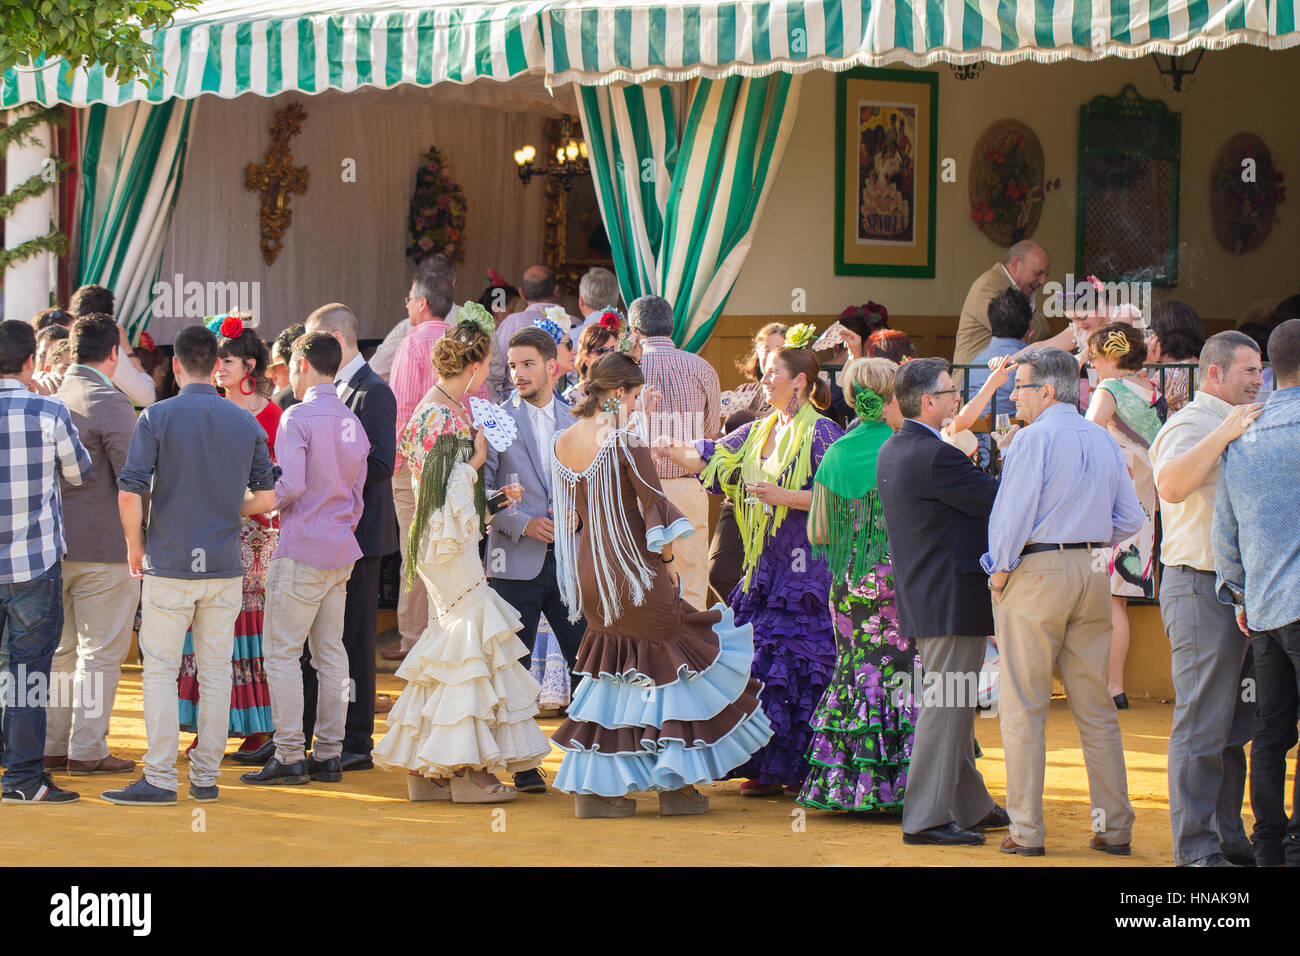 Siviglia, Spagna - Apr, 25: persone vestite in costumi tradizionali spagnoli ballare e festeggiare il Siviglia la fiera di aprile in aprile, 25, 2014 in Sevill Foto Stock